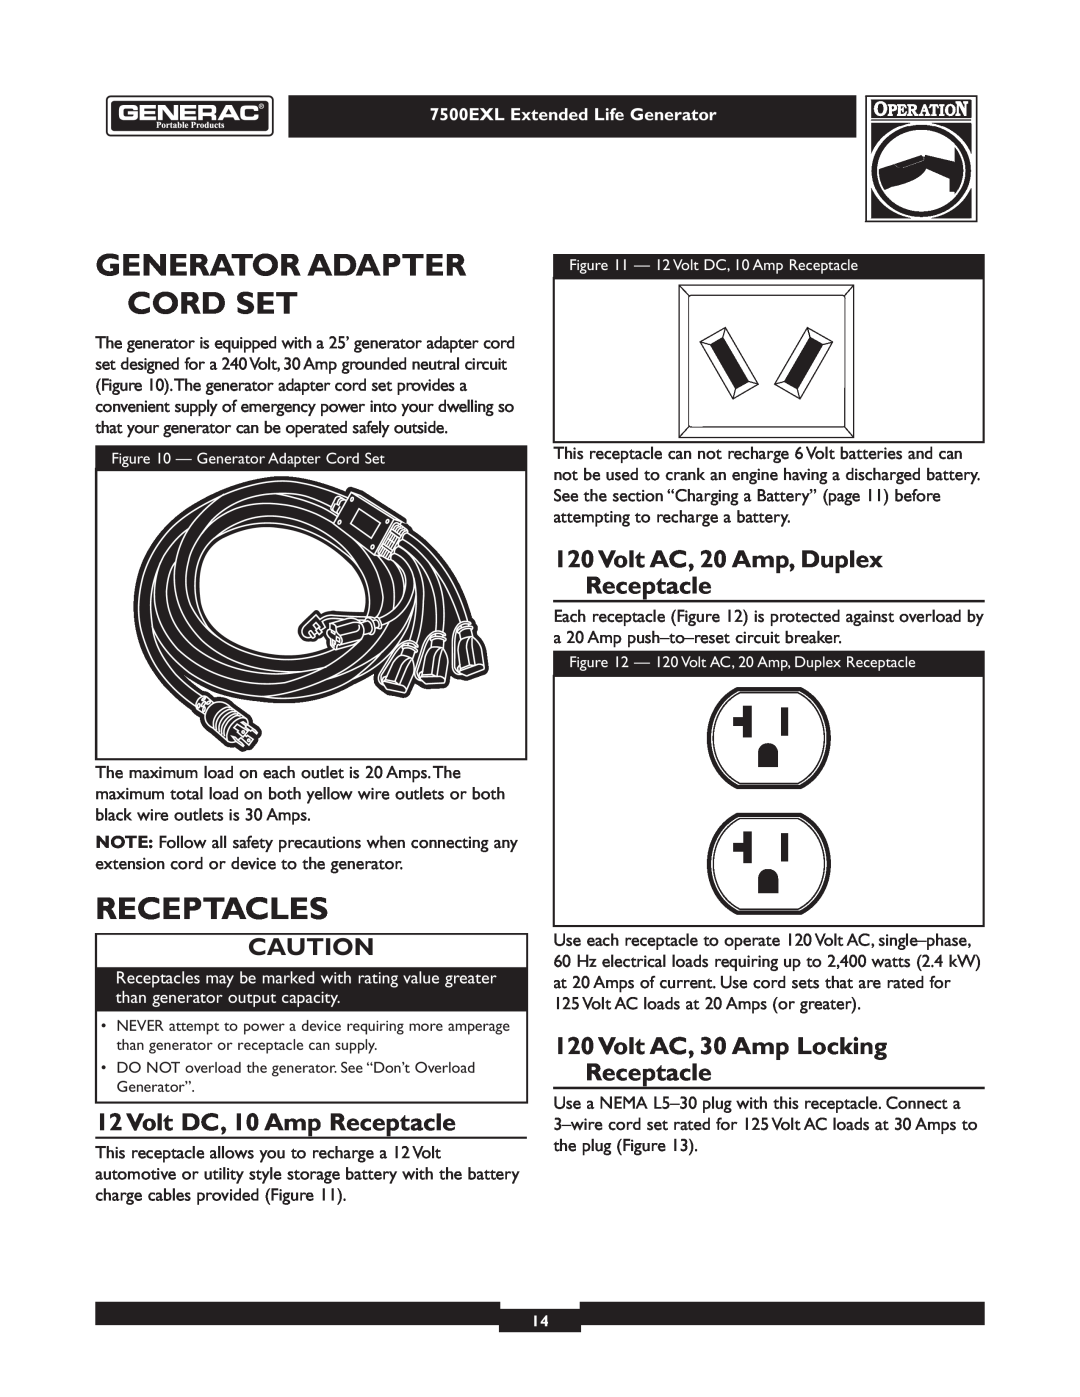 Generac 101 9-3 Generator Adapter Cord Set, Receptacles, Volt DC, 10 Amp Receptacle, Volt AC, 20 Amp, Duplex Receptacle 